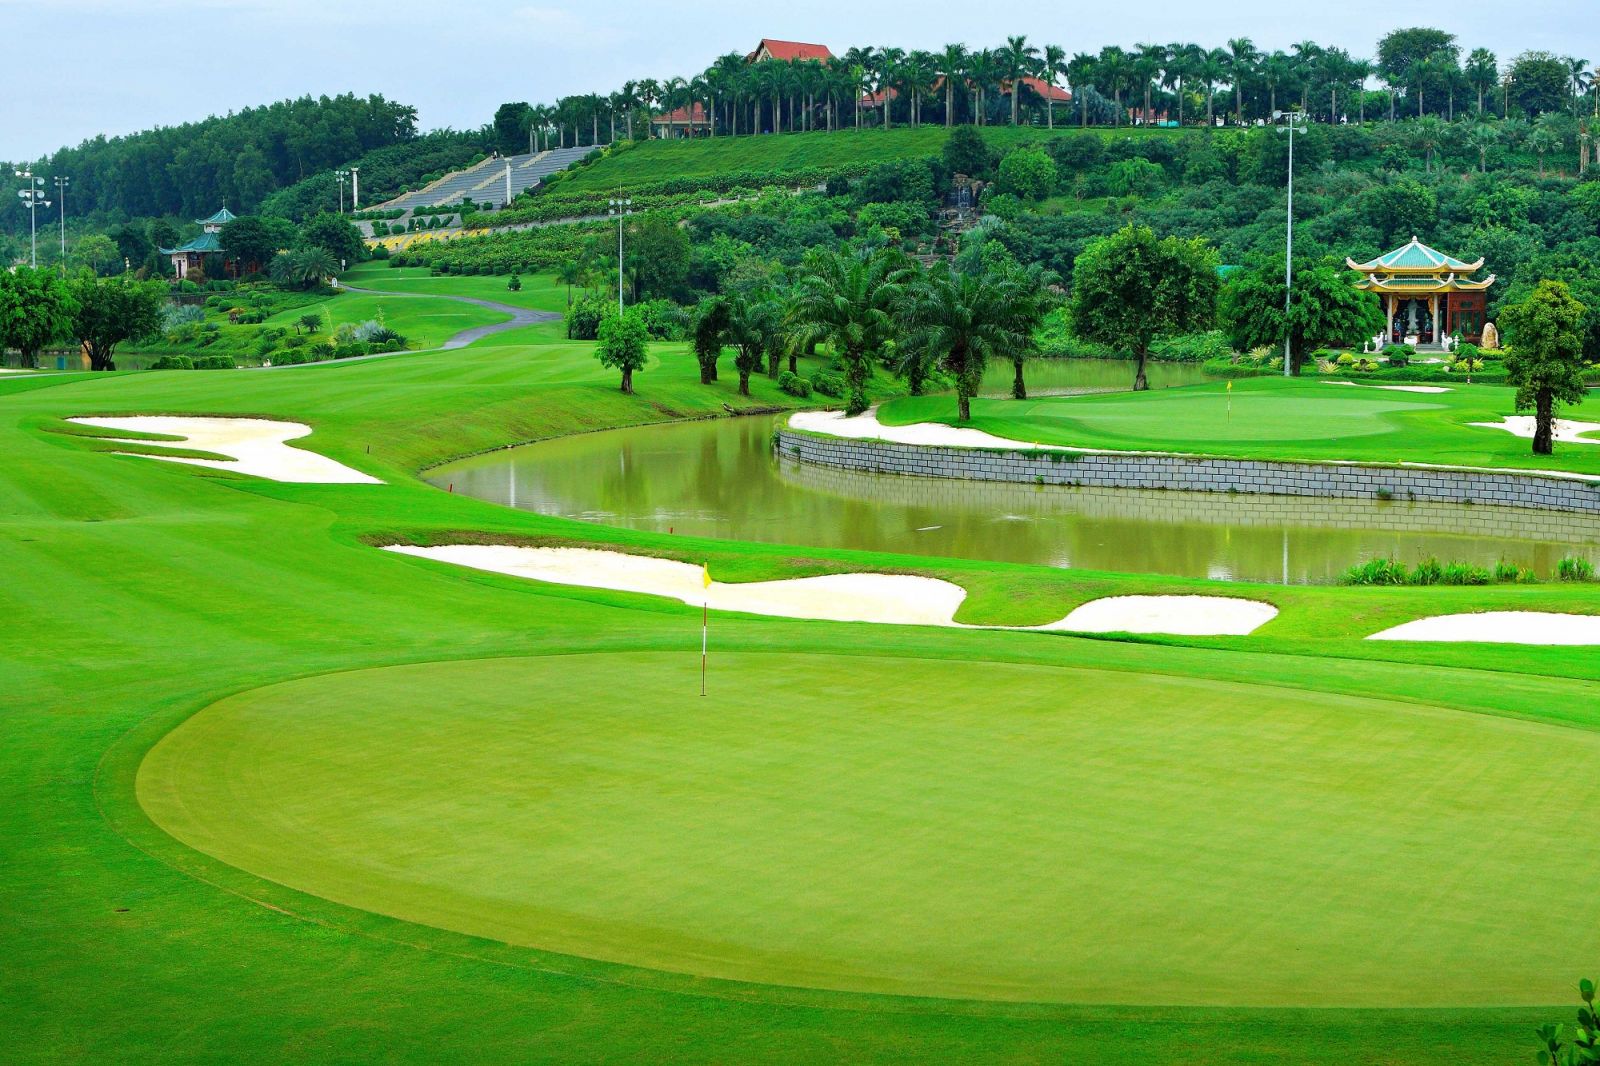 Tiêu chuẩn thiết kế sân golf là gì ?